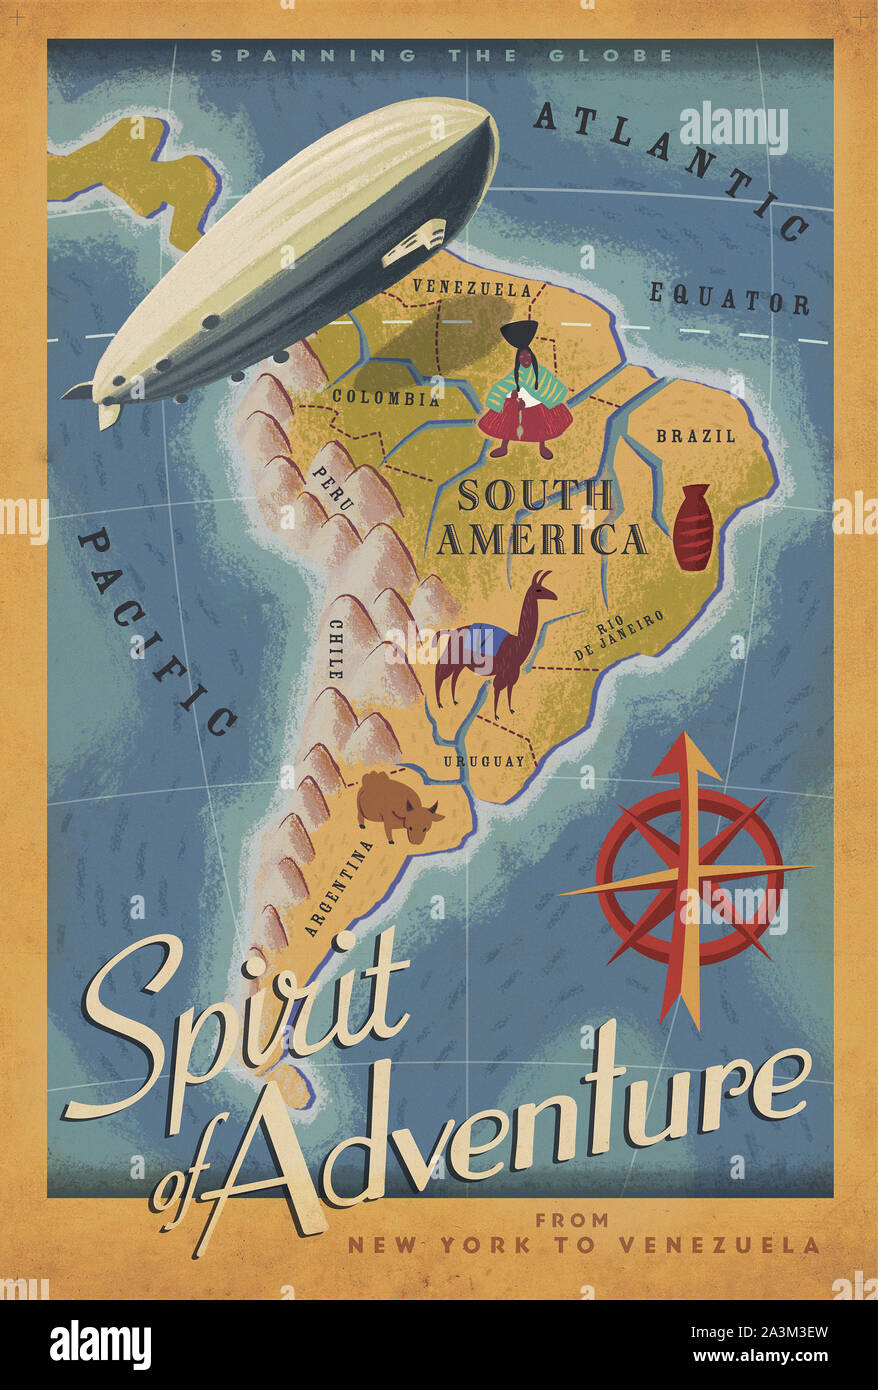 Geist des Abenteuers - Zeppelin New-York zu Venezuela - Vintage Travel Poster Stockfoto